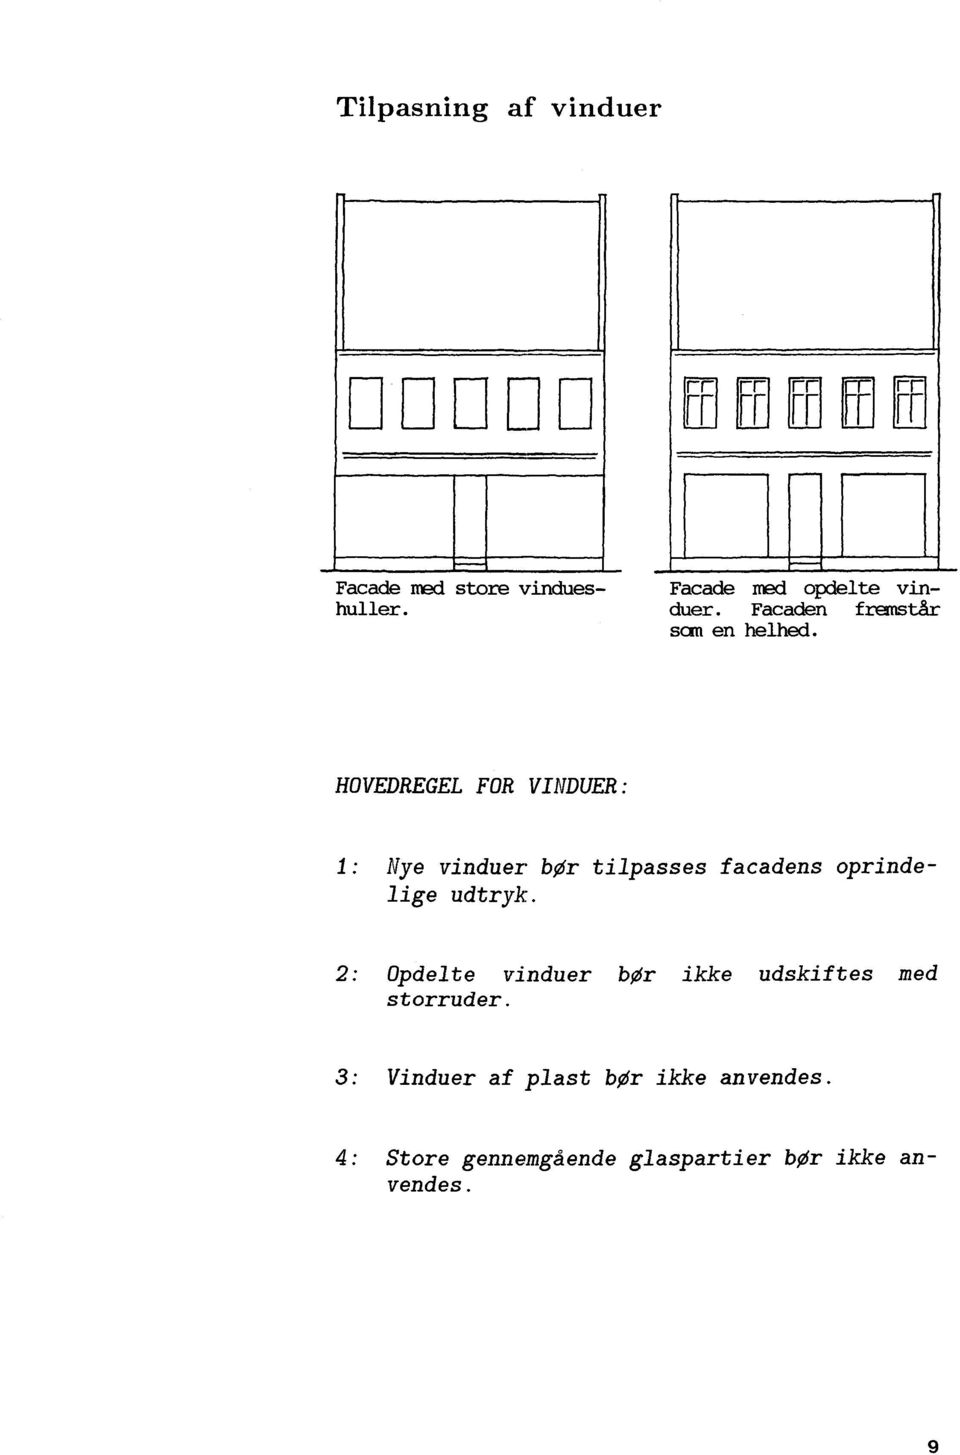 HOVEDREGEL FOR VINDUER: Nye vinduer bør tilpasses facadens oprindelige udtryk.